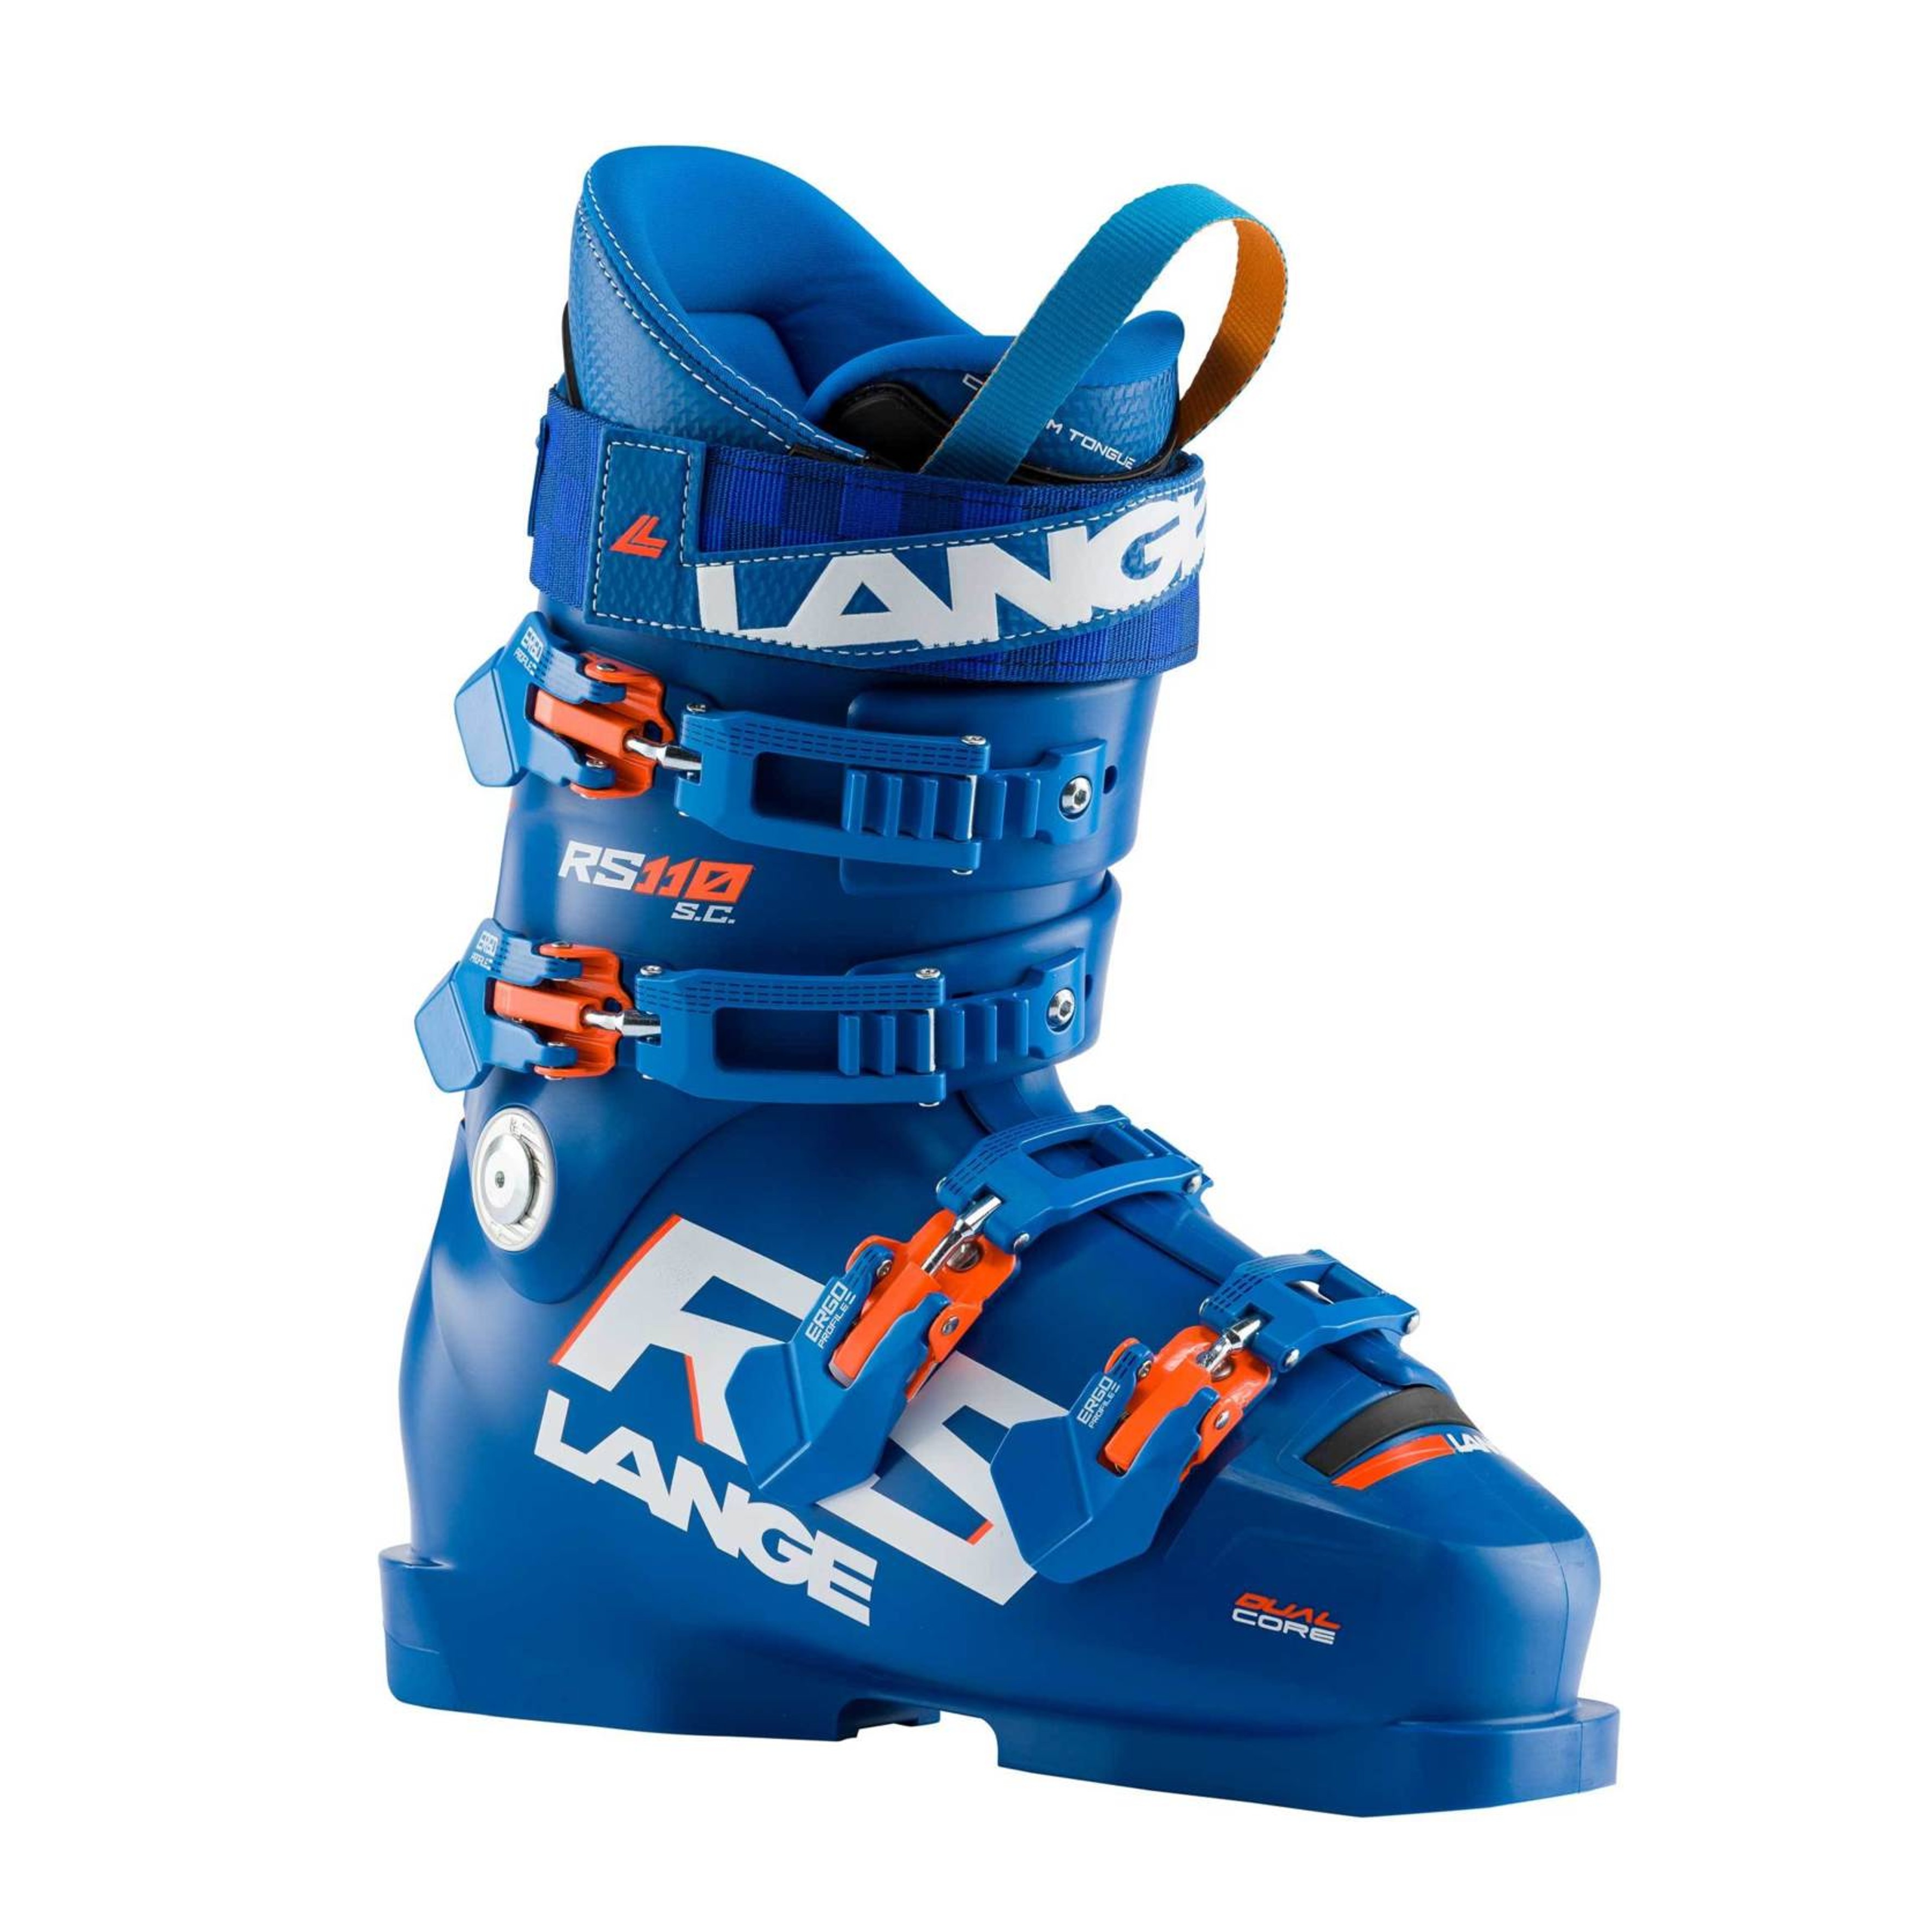 Lange RS 110 S.C. (POWER BLUE) - Skischuhe